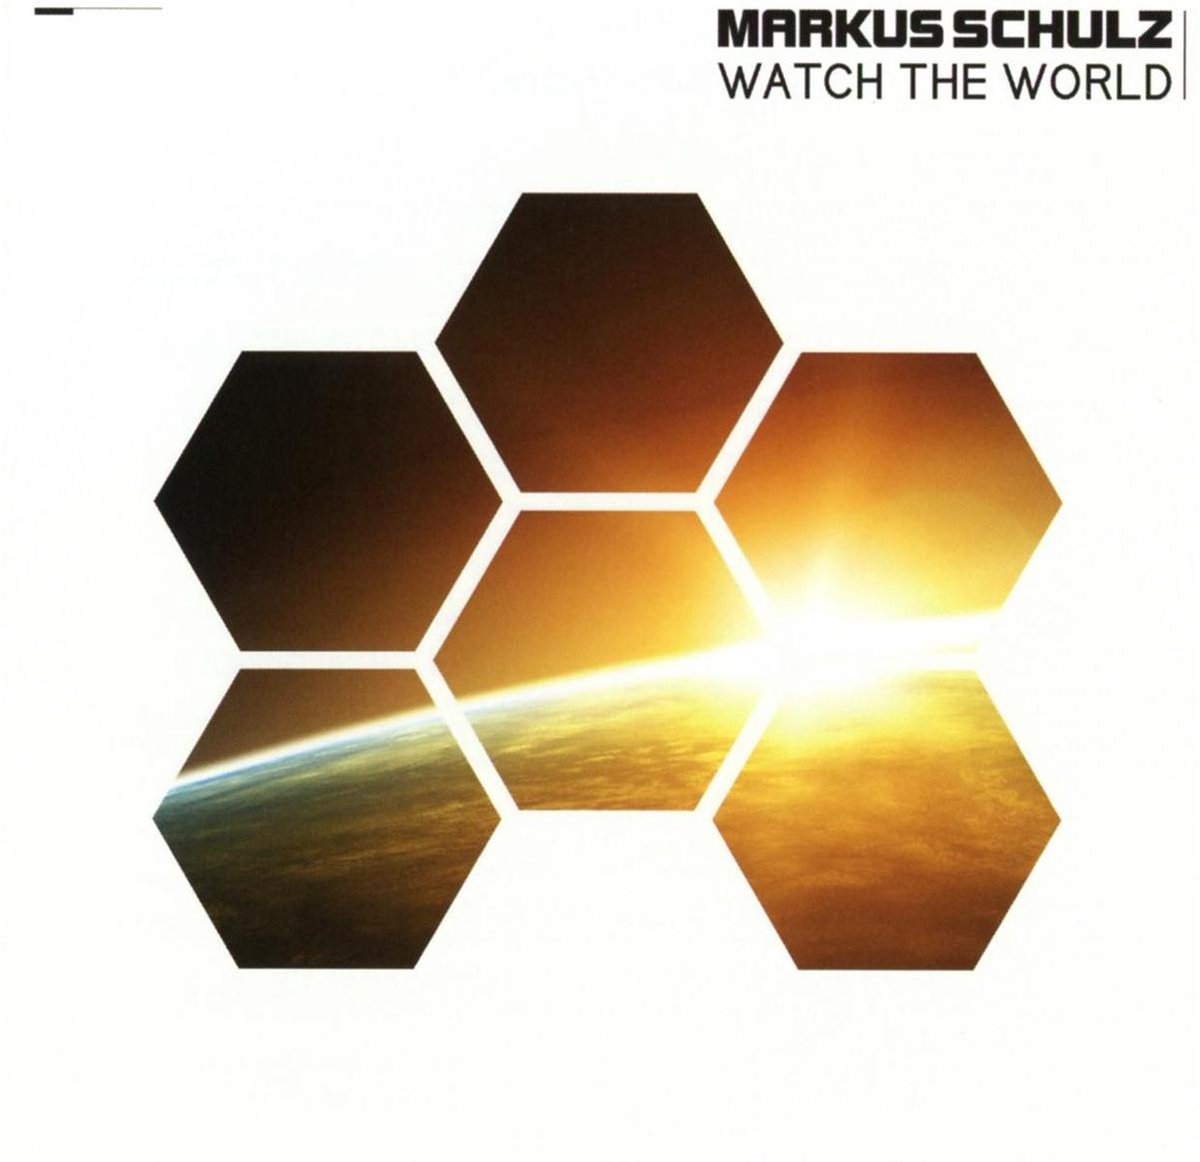 Schulz Markus - Watch The World - Markus Schulz